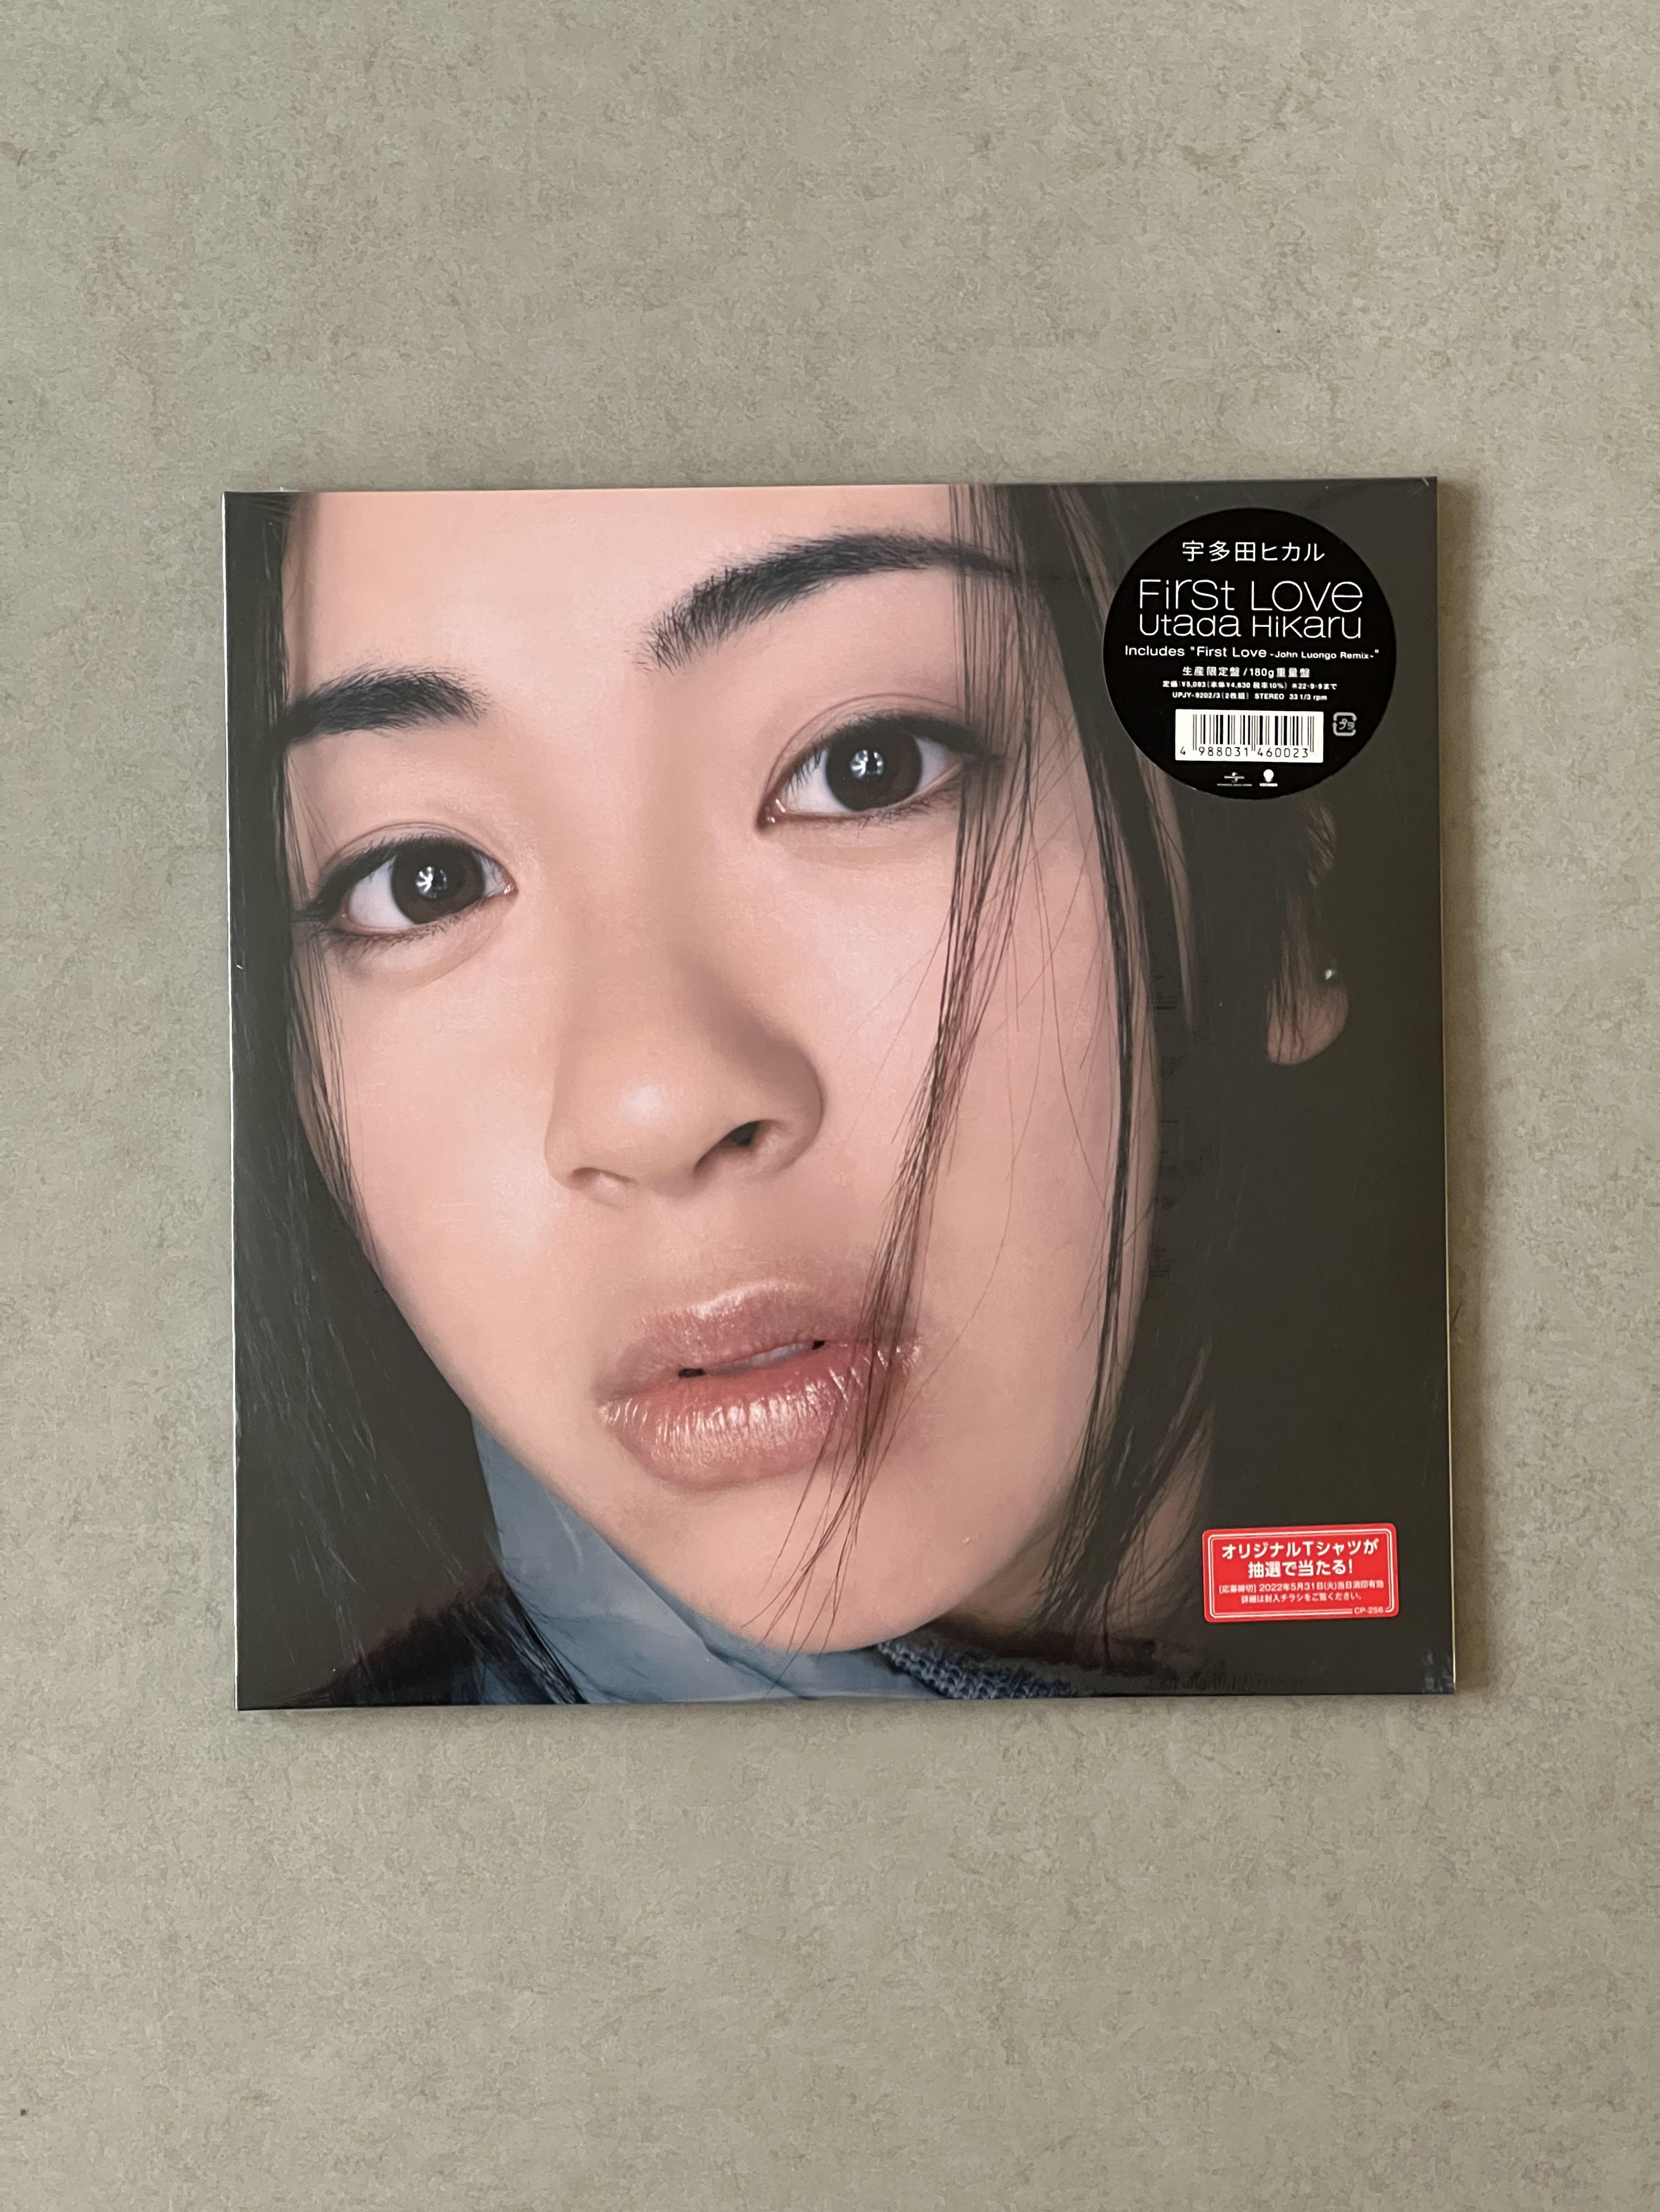 超安い 宇多田ヒカル First Love LP アナログ レコード オリジナル盤 